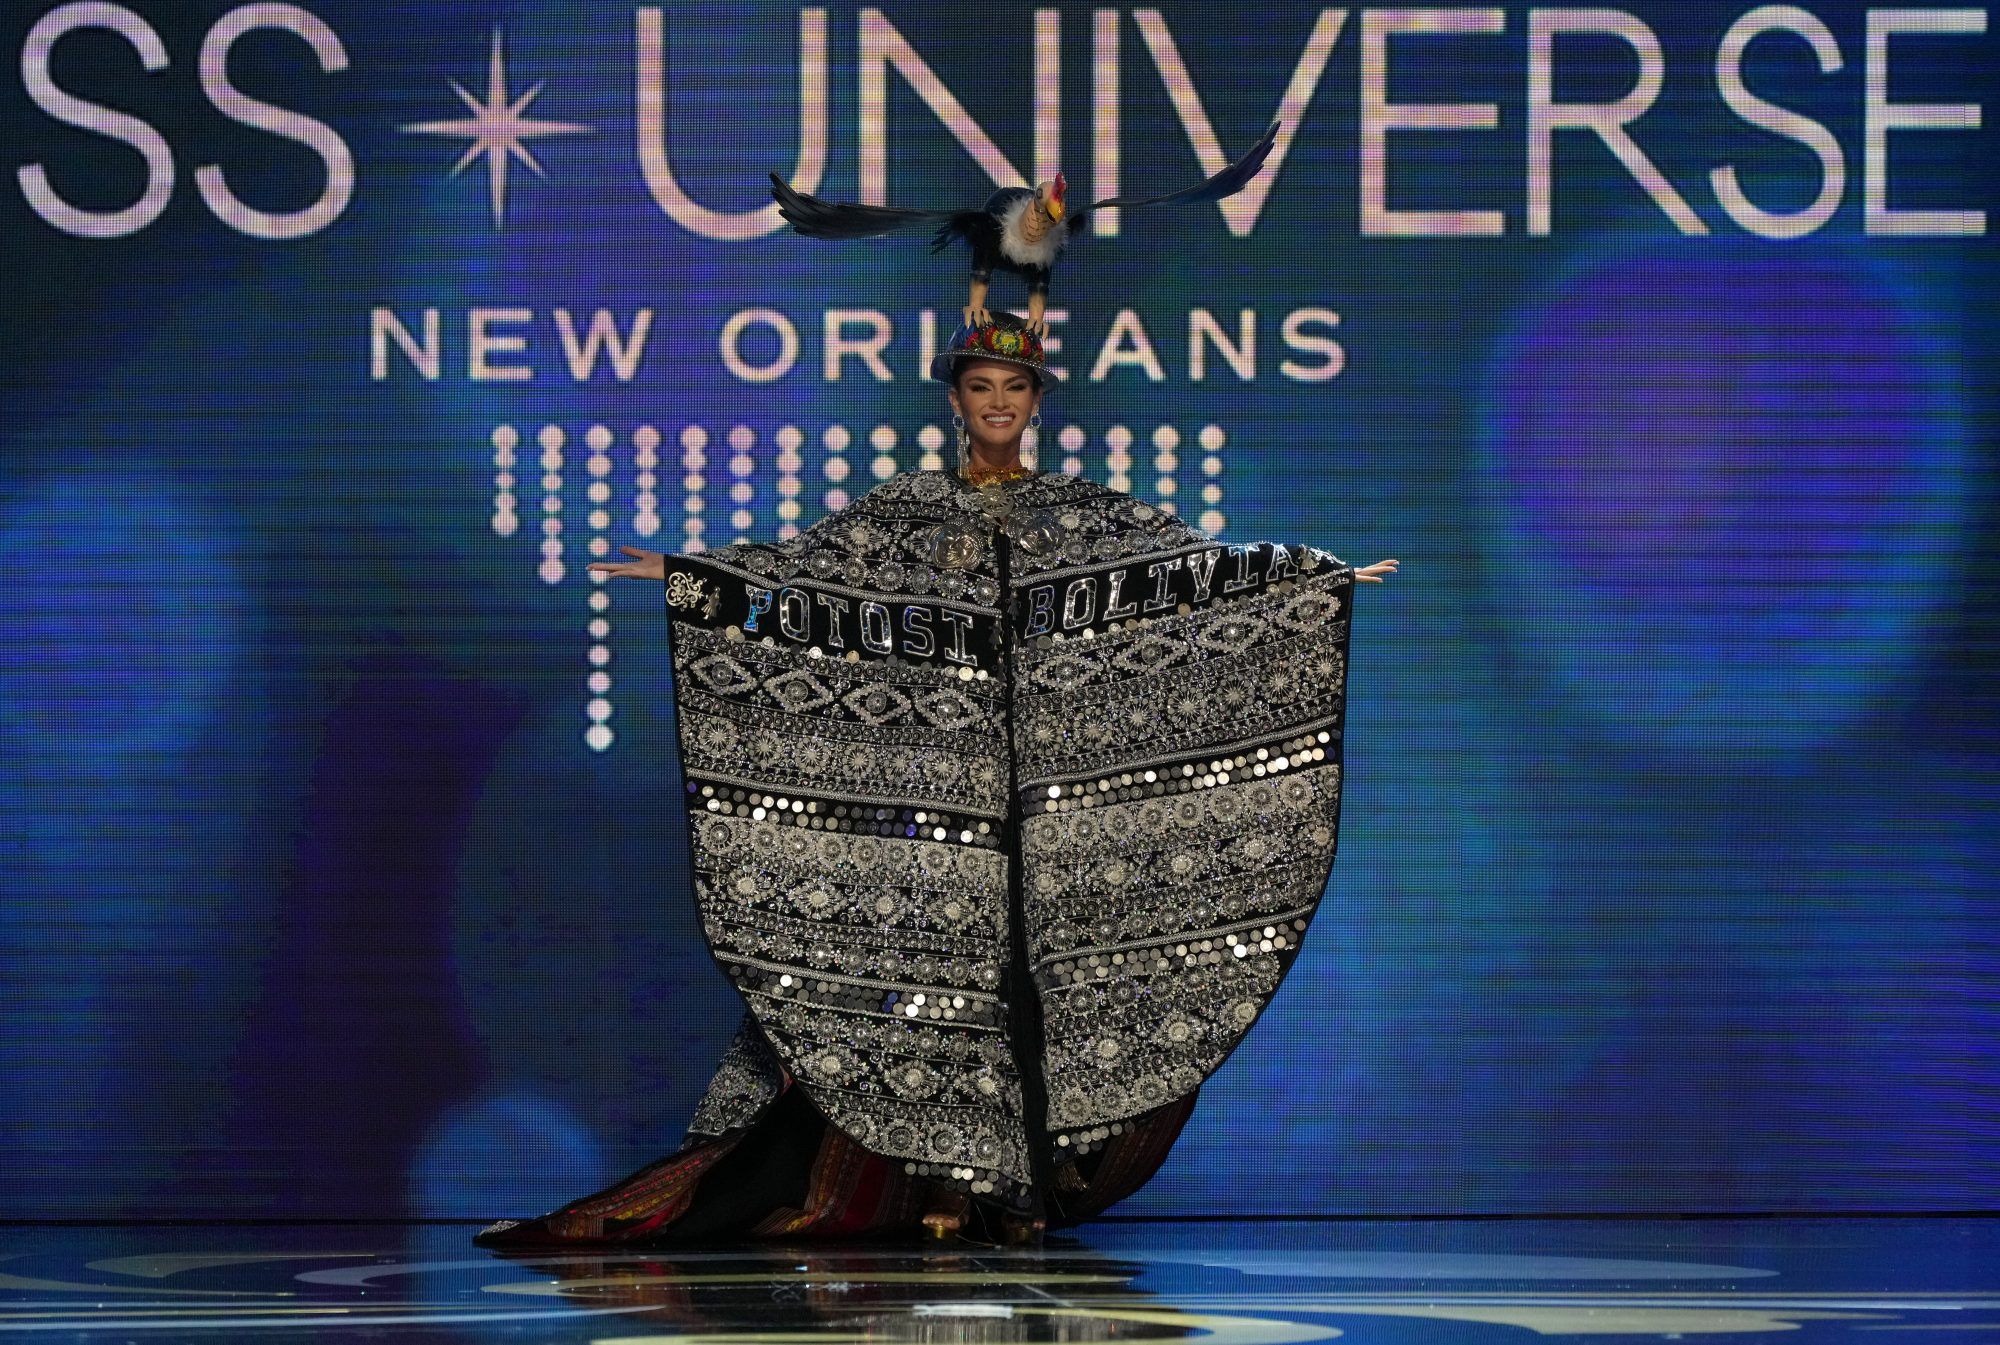 Alessia Rovegno y los trajes típicos de las representantes latinas en el Miss Universo 